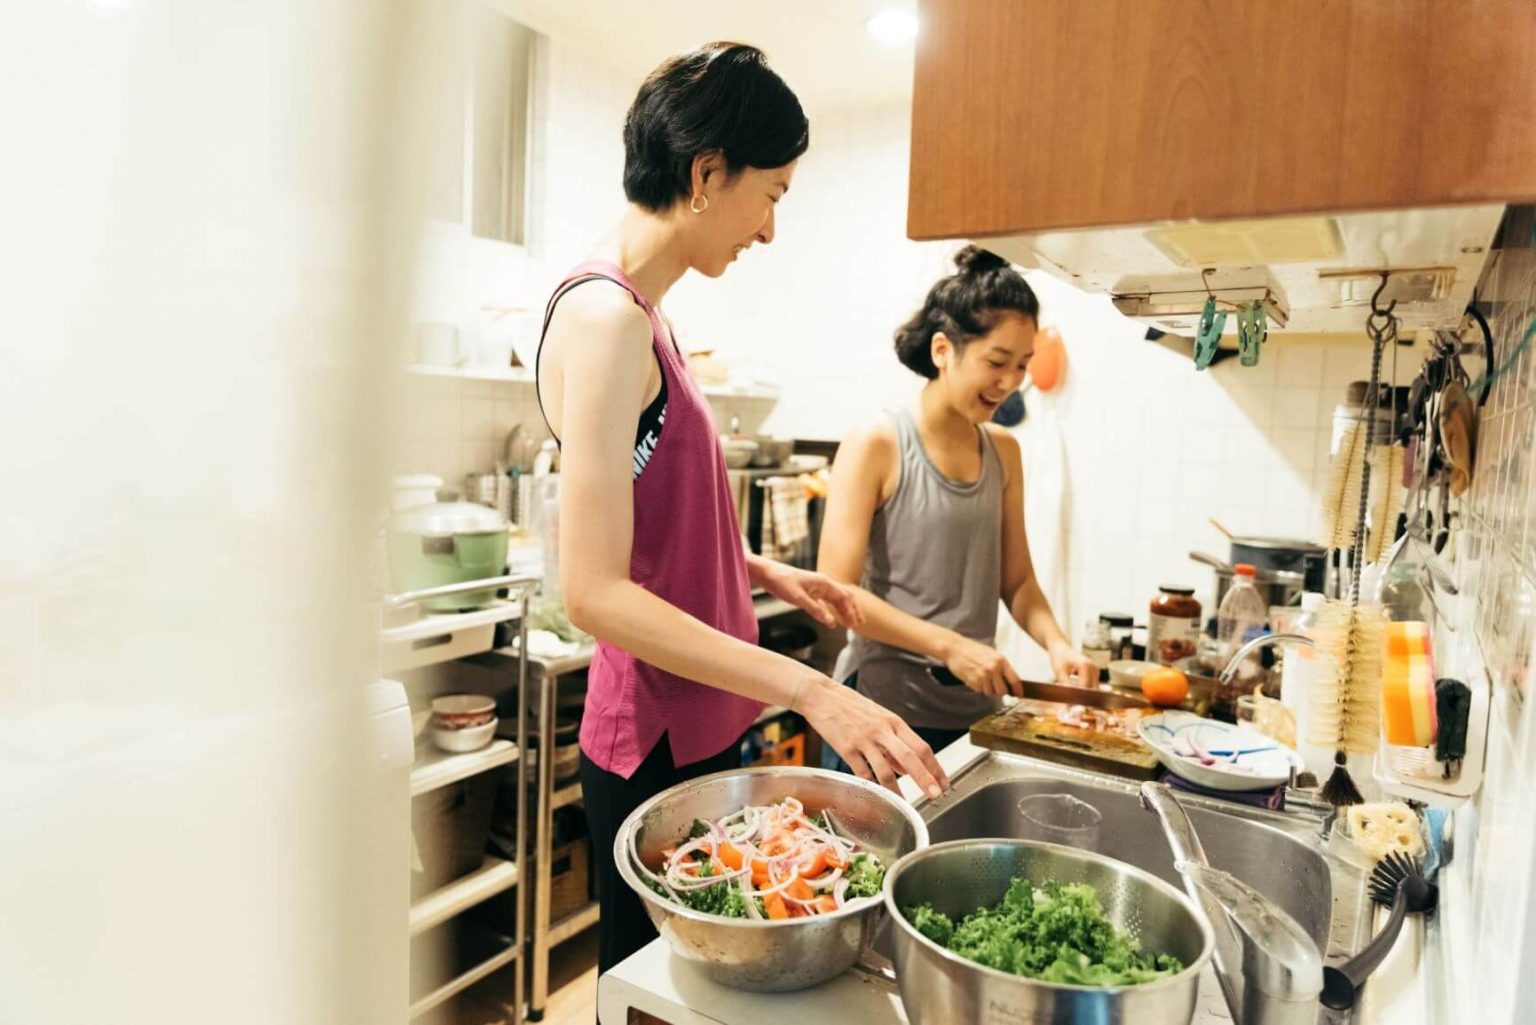 食事は自炊というタフィー。野菜と適度のタンパク質を摂るようにしている。